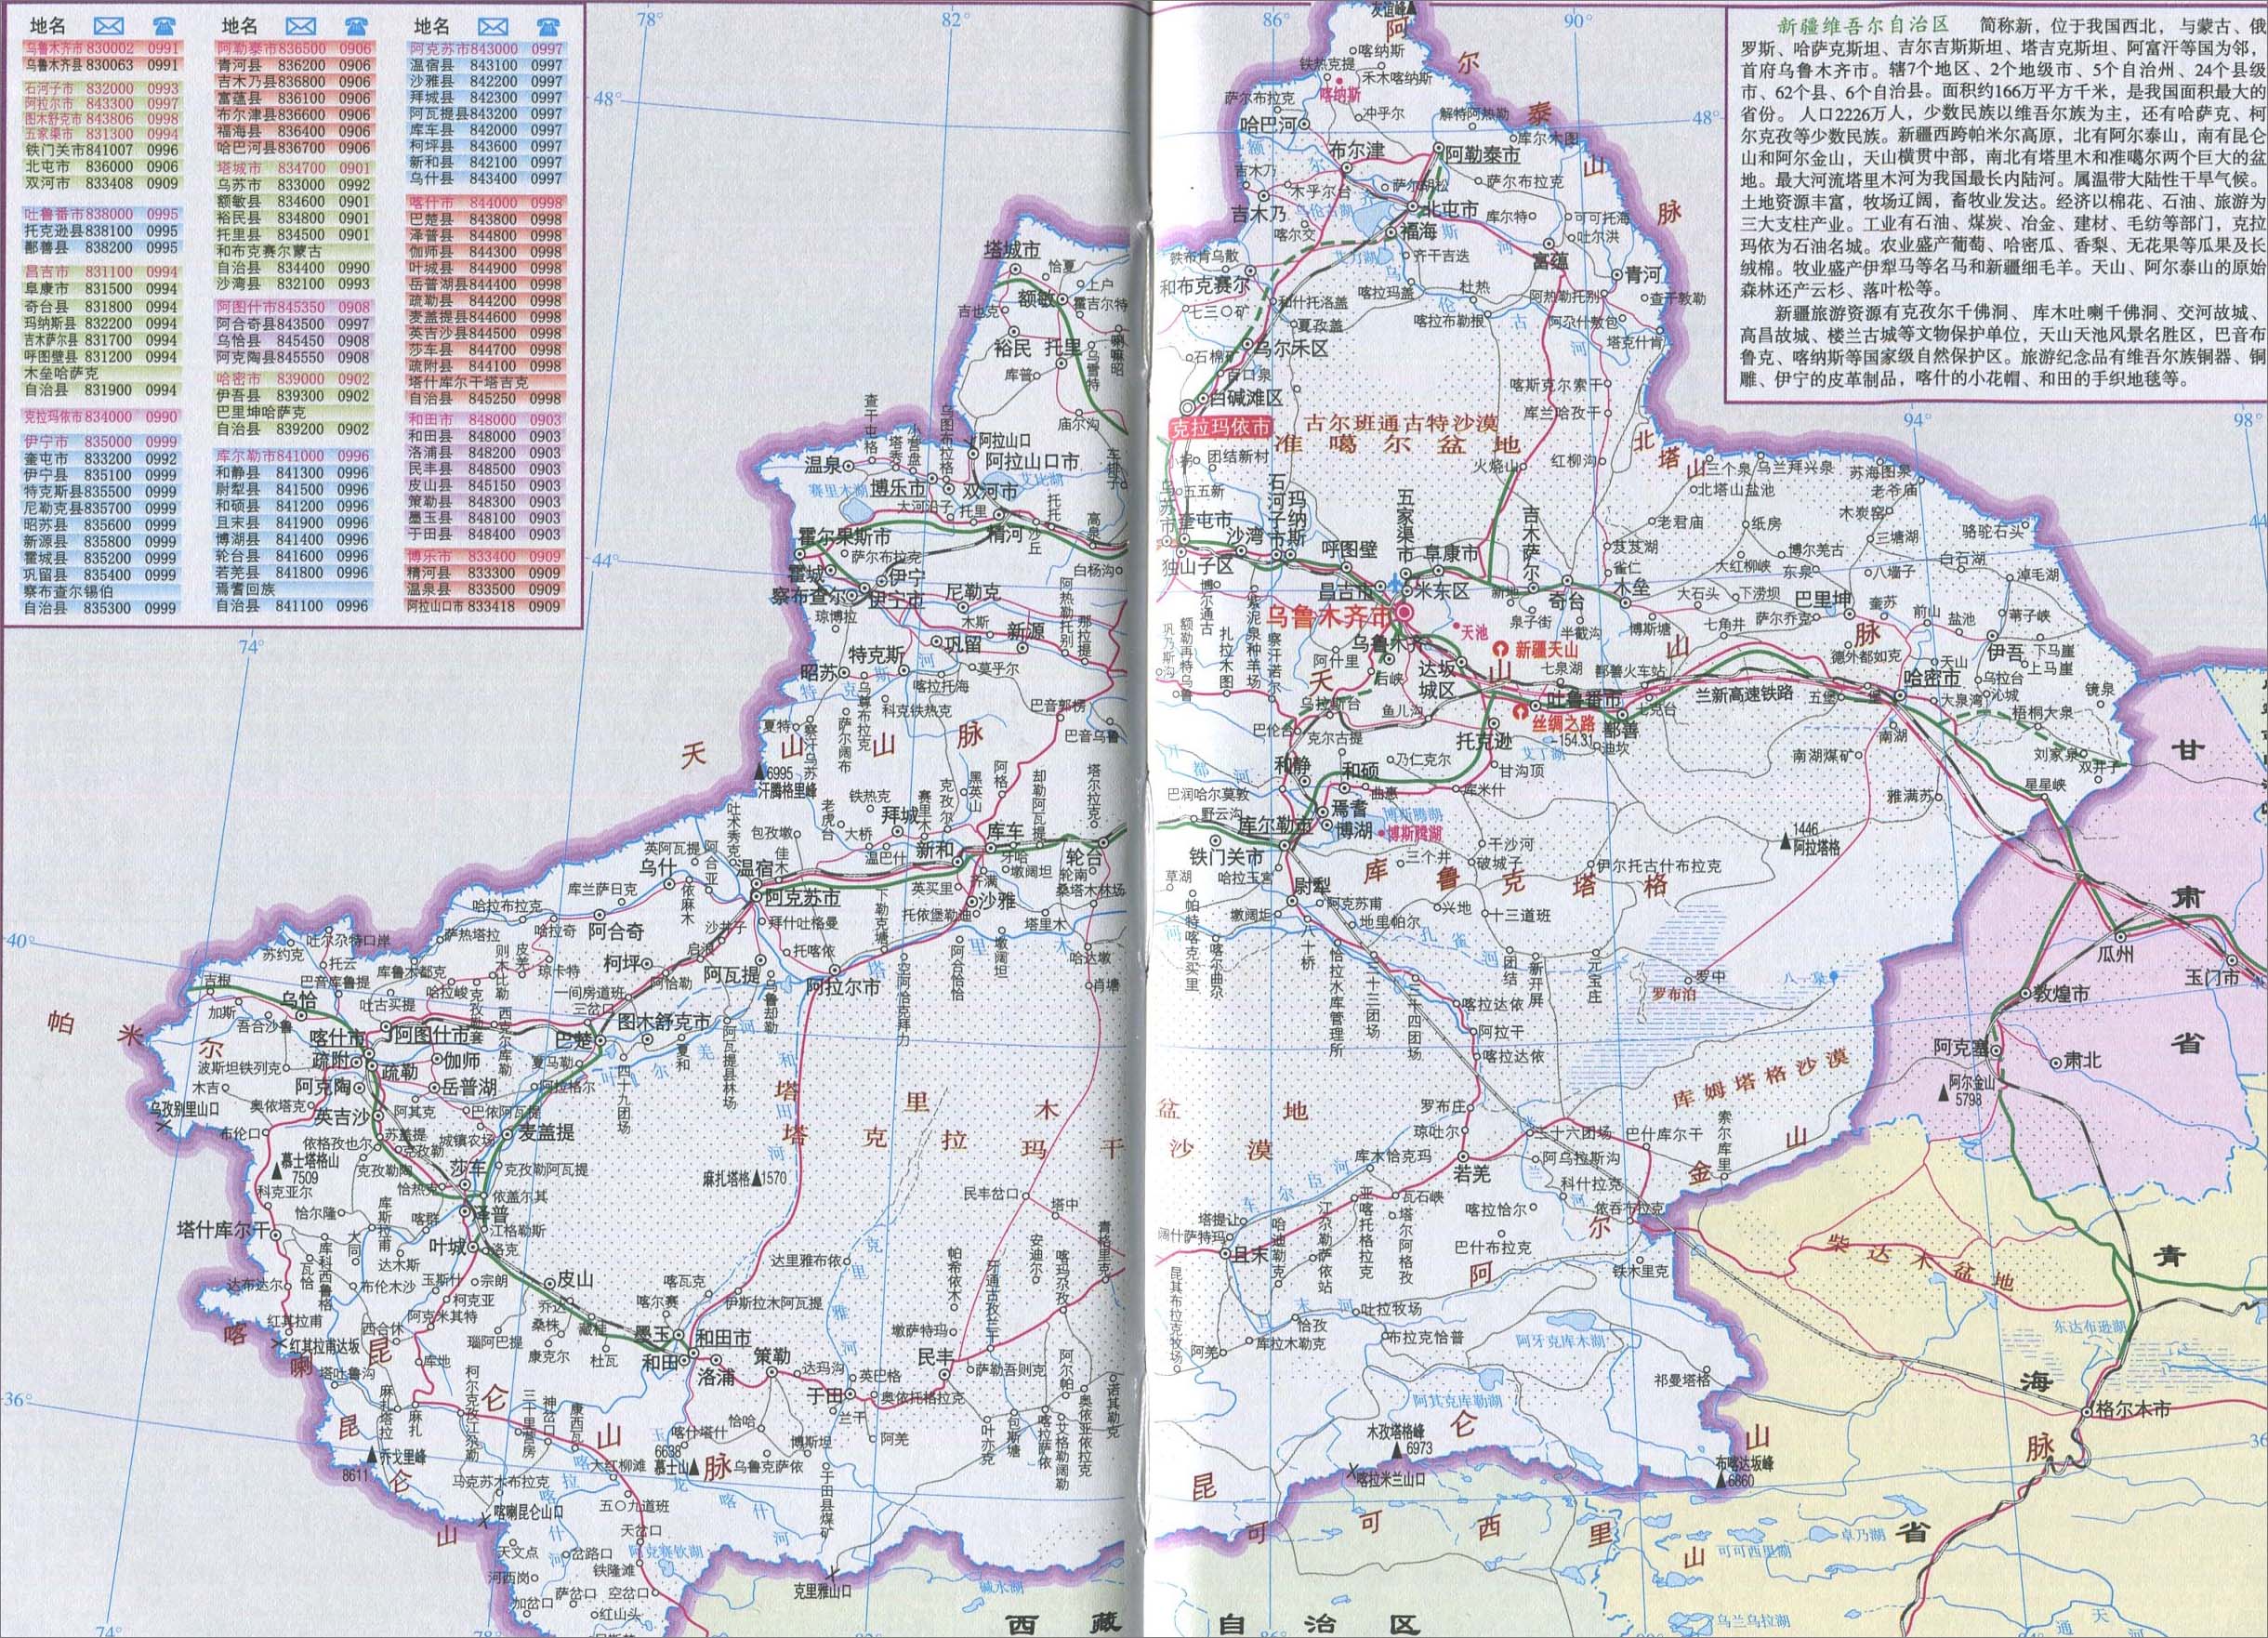 新疆旅游 >> 新疆城区旅游地图  景点导航:世界旅游  中国旅游  北京图片